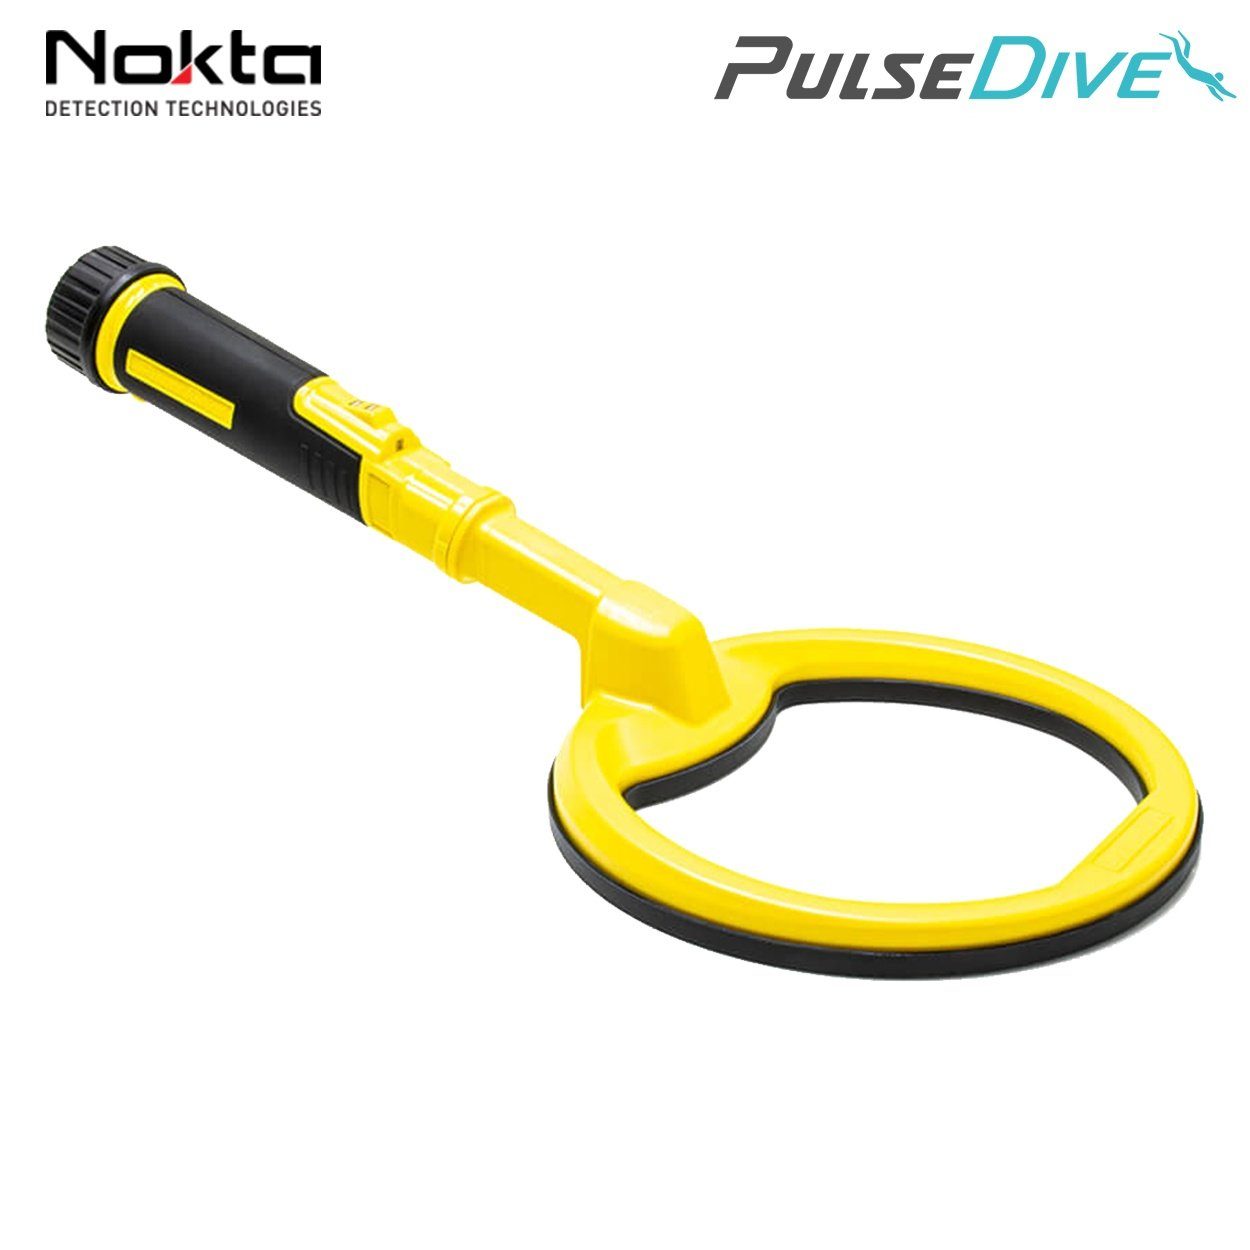 mit Nokta cm Detektor (gelb), Suchspule 20 Metalldetektor Unterwasser PulseDive